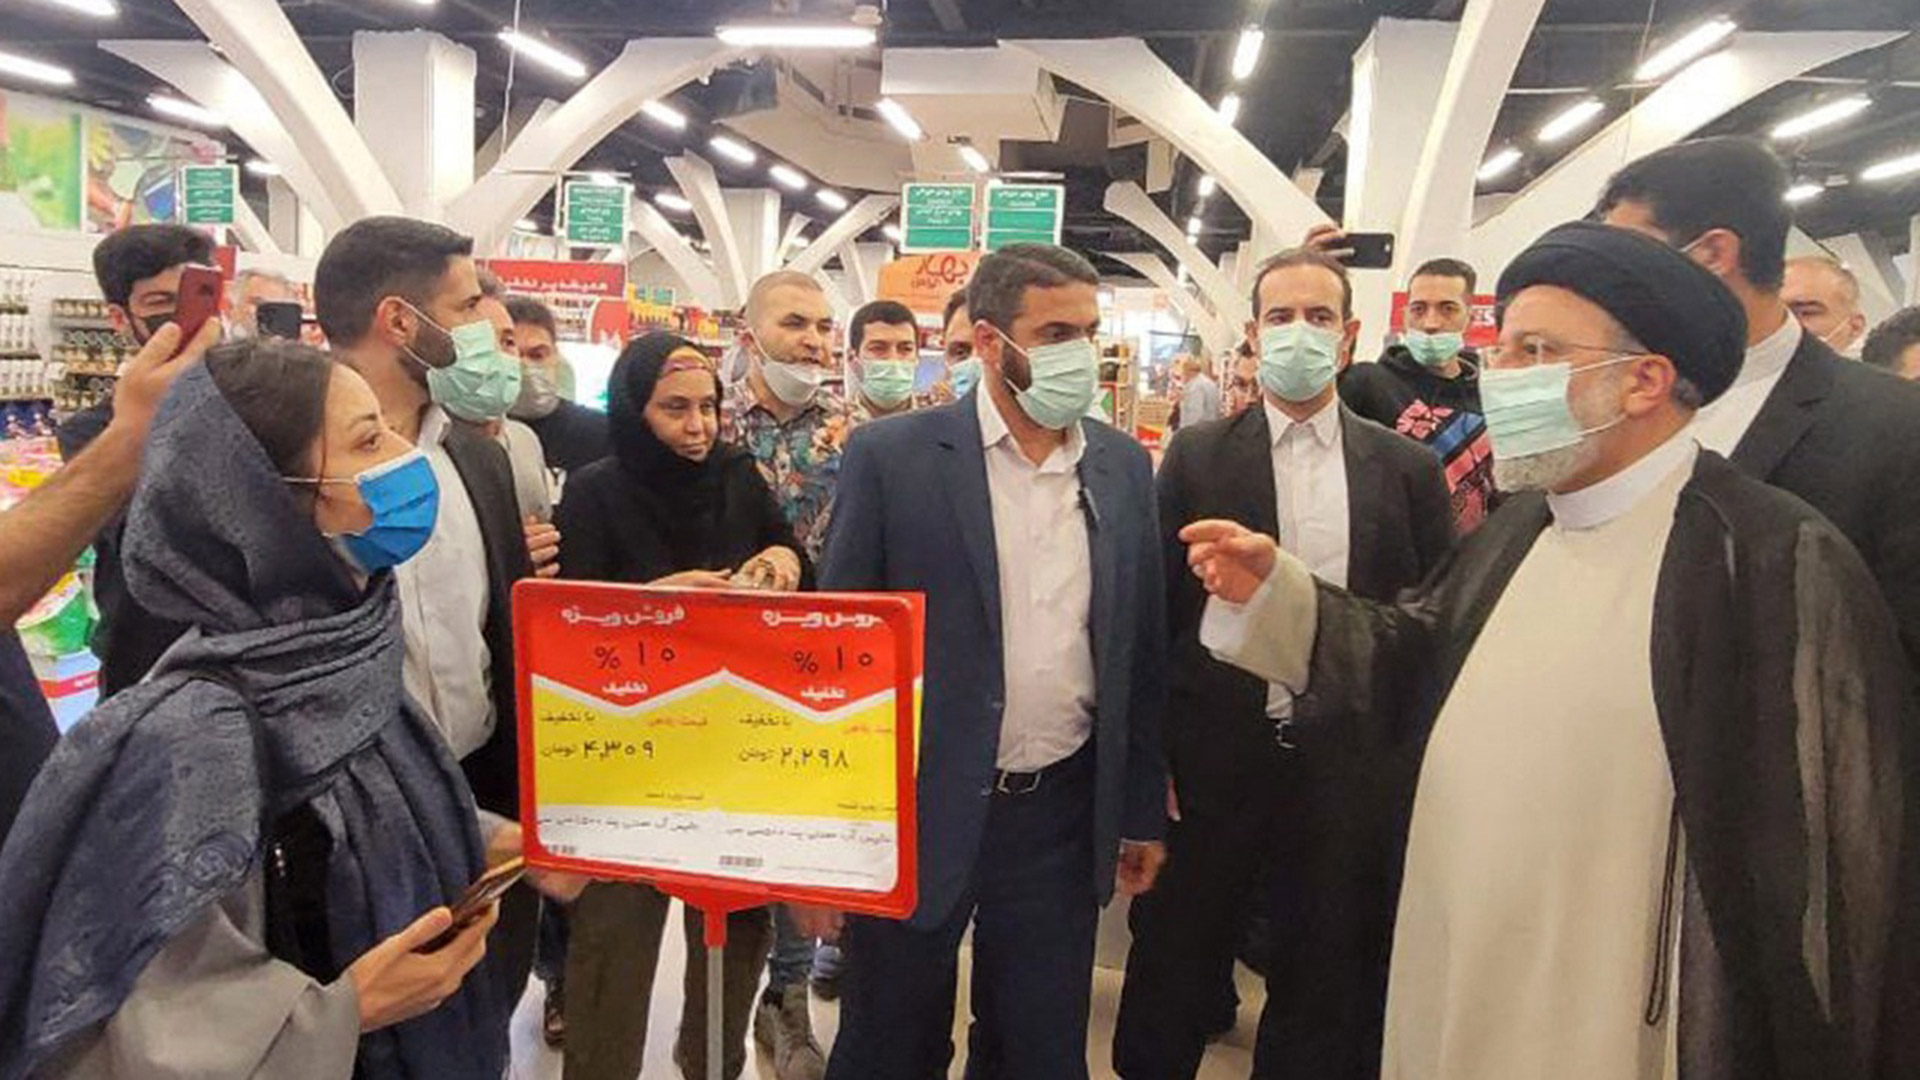 Una imagen facilitada por la presidencia iraní muestra al presidente Ebrahim Raisi visitando un mercado en Teherán este 13 de mayo (AFP)